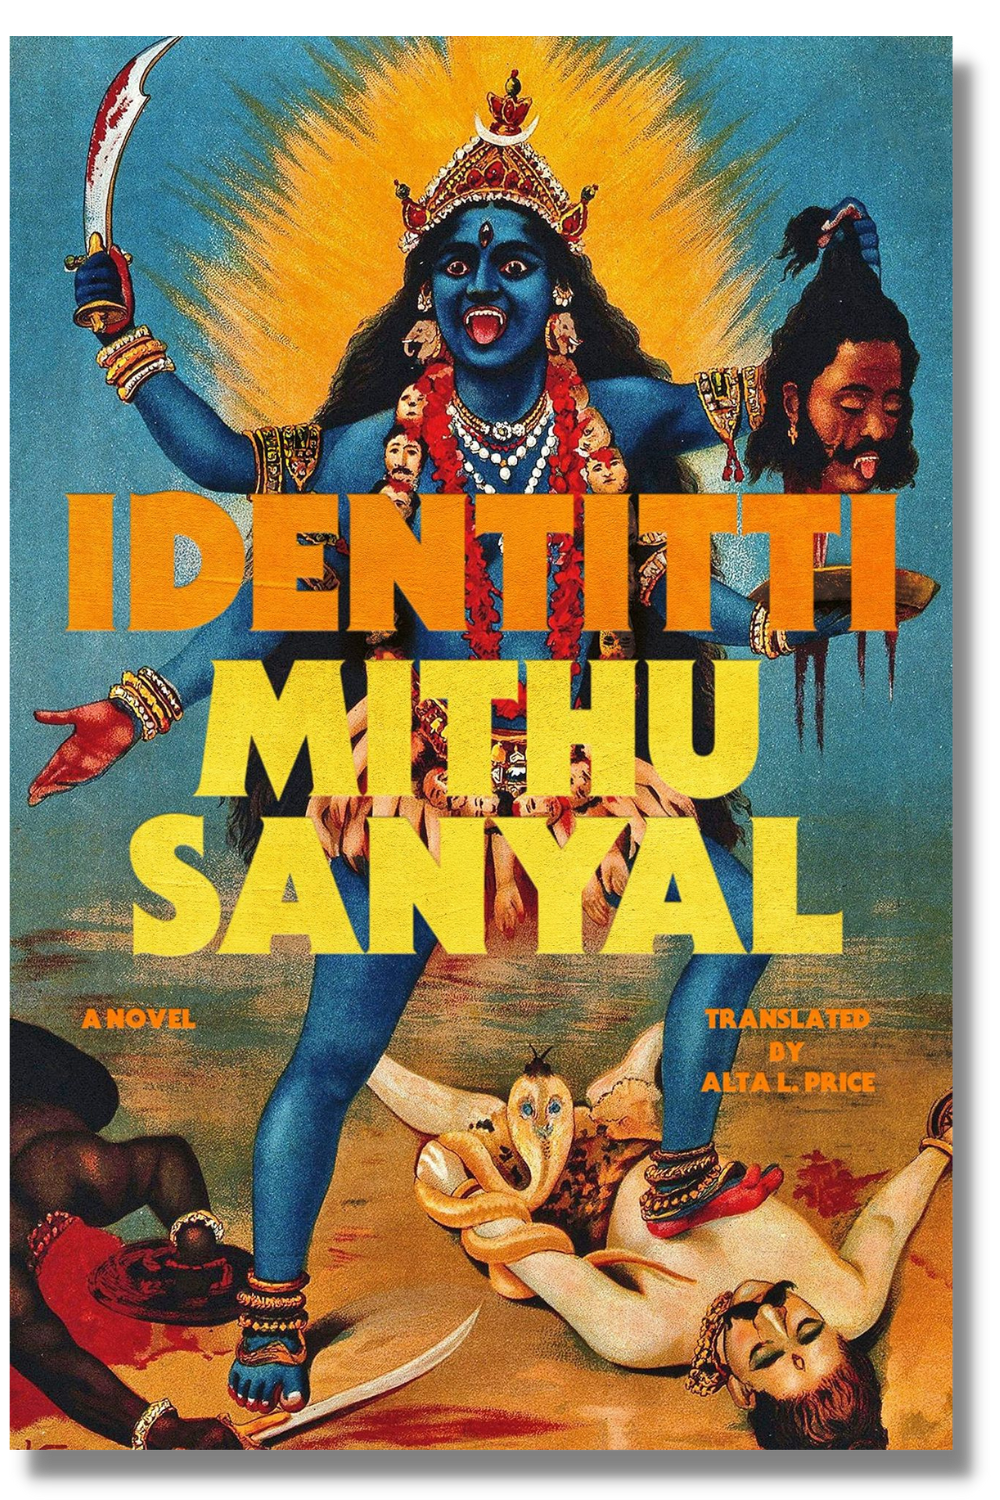 The cover of "Identitti"